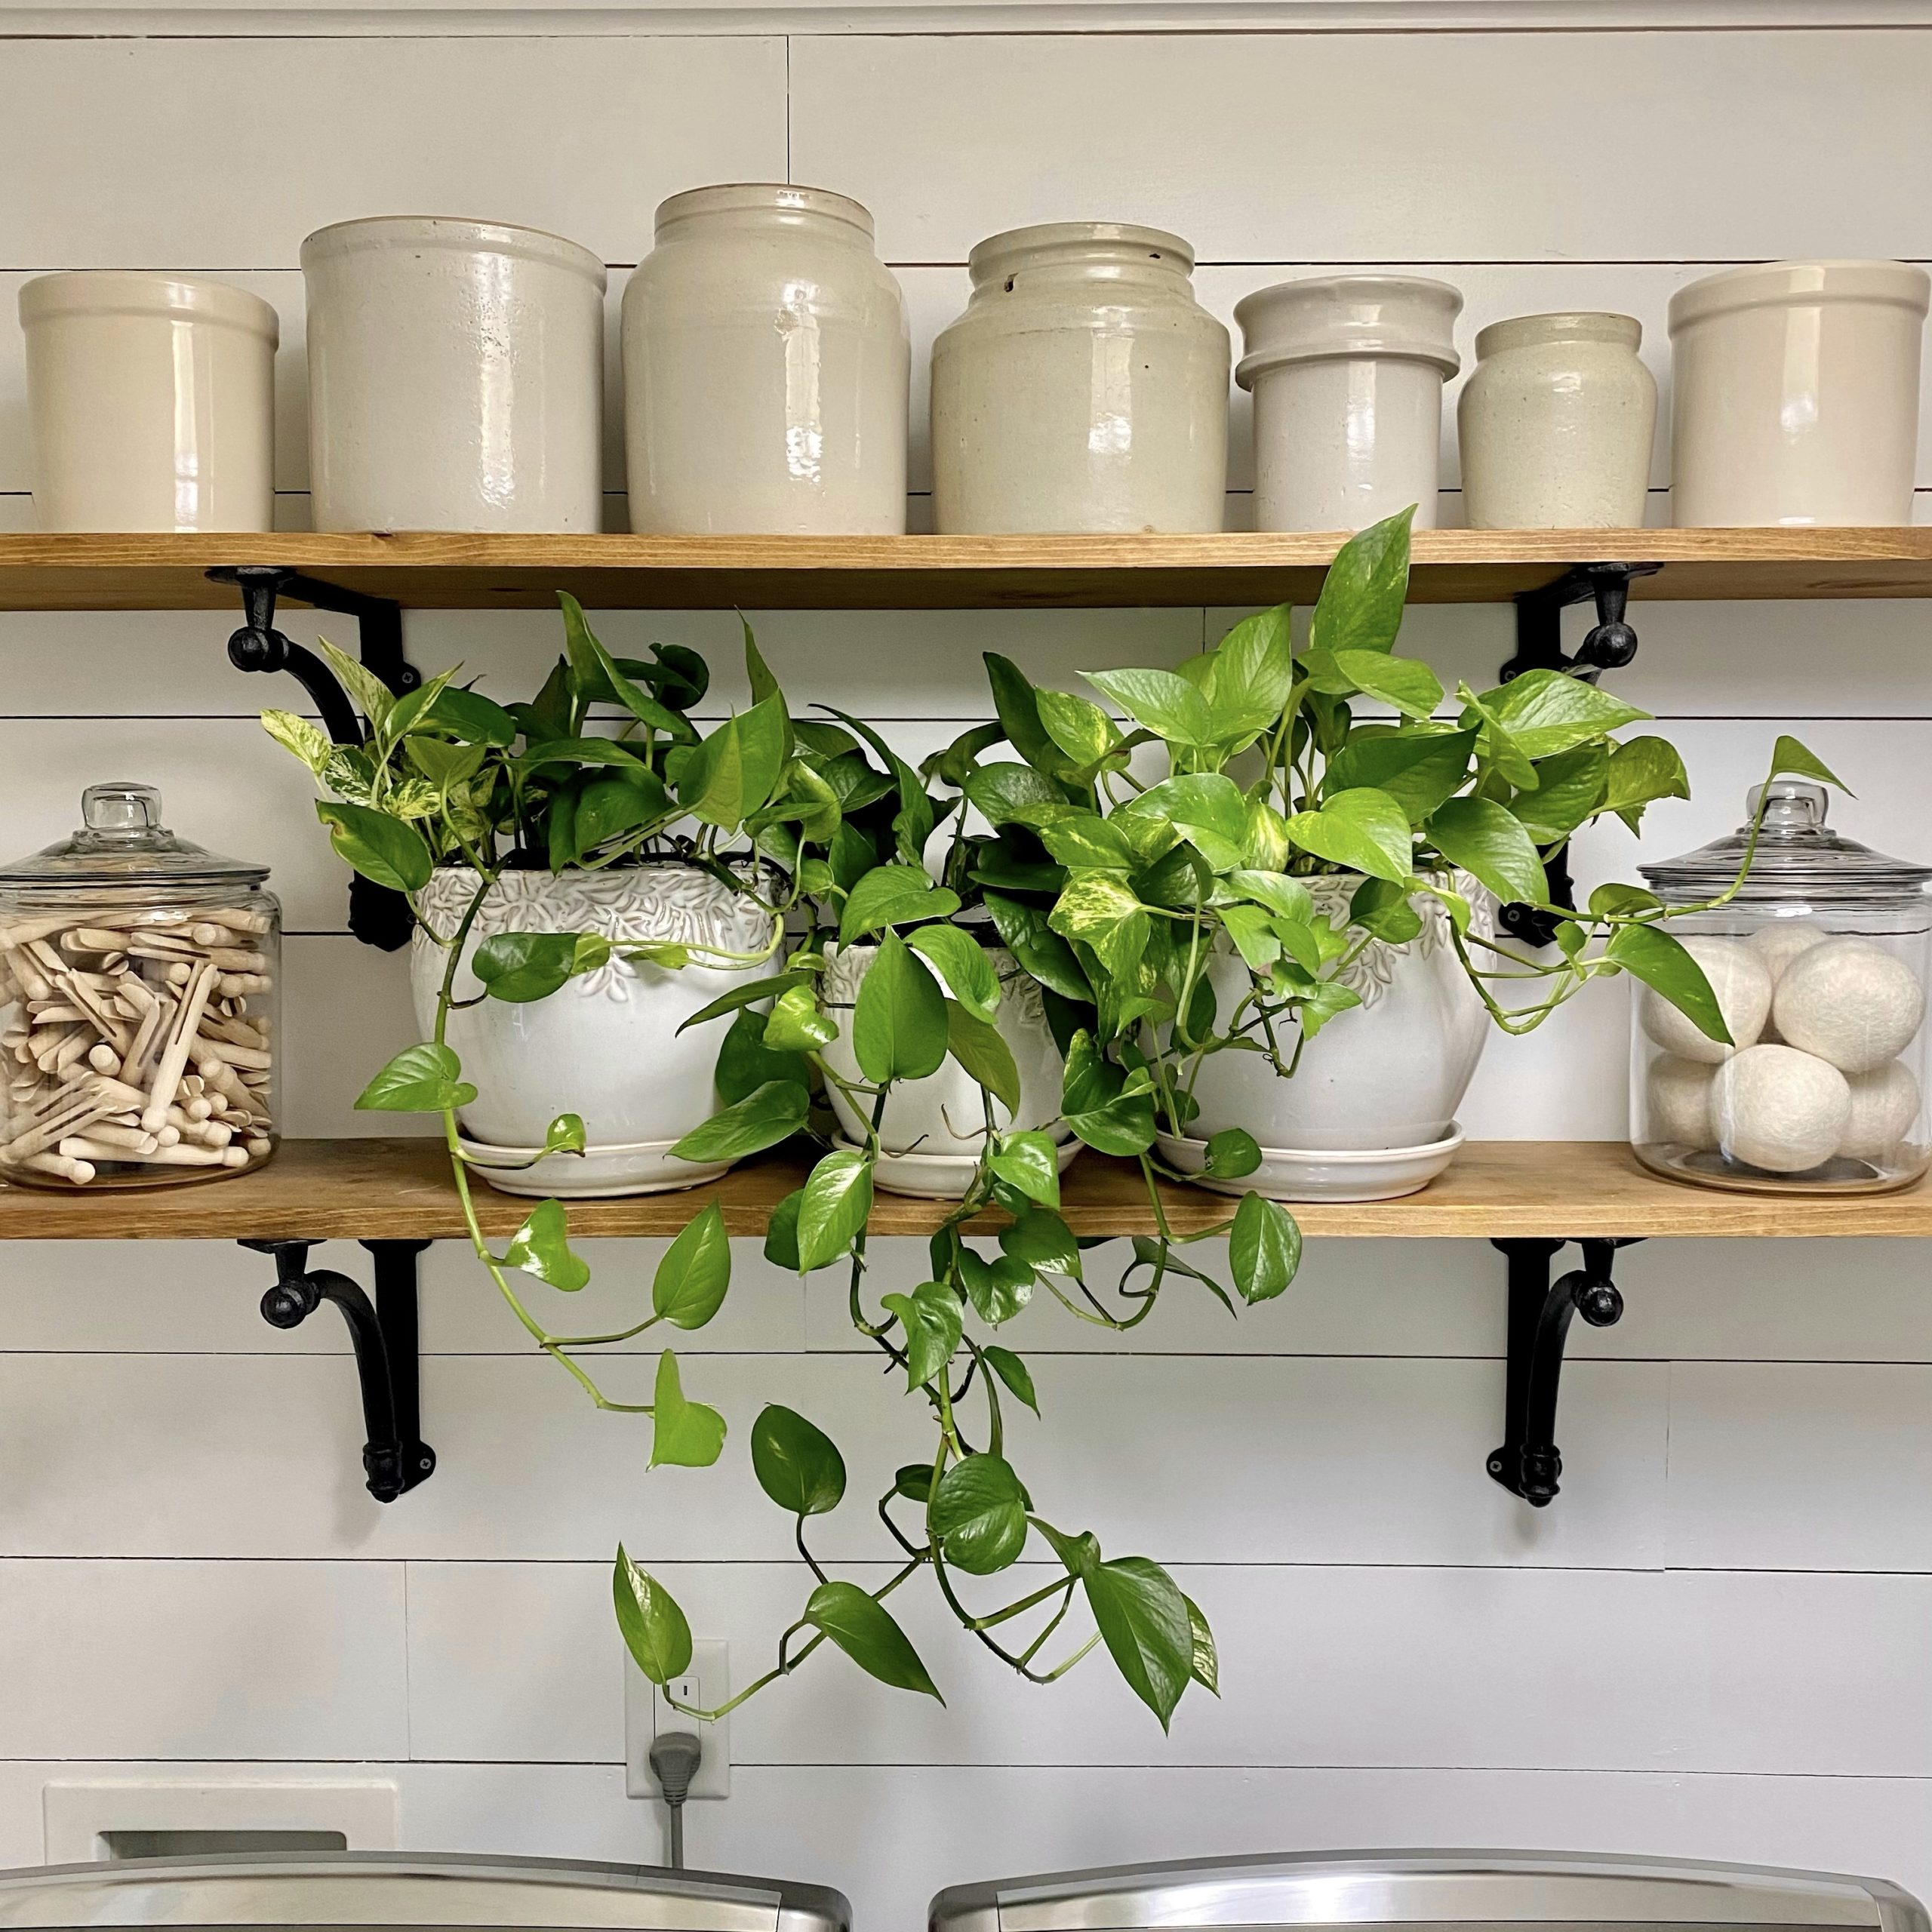 Pothos in pots on open shelves.